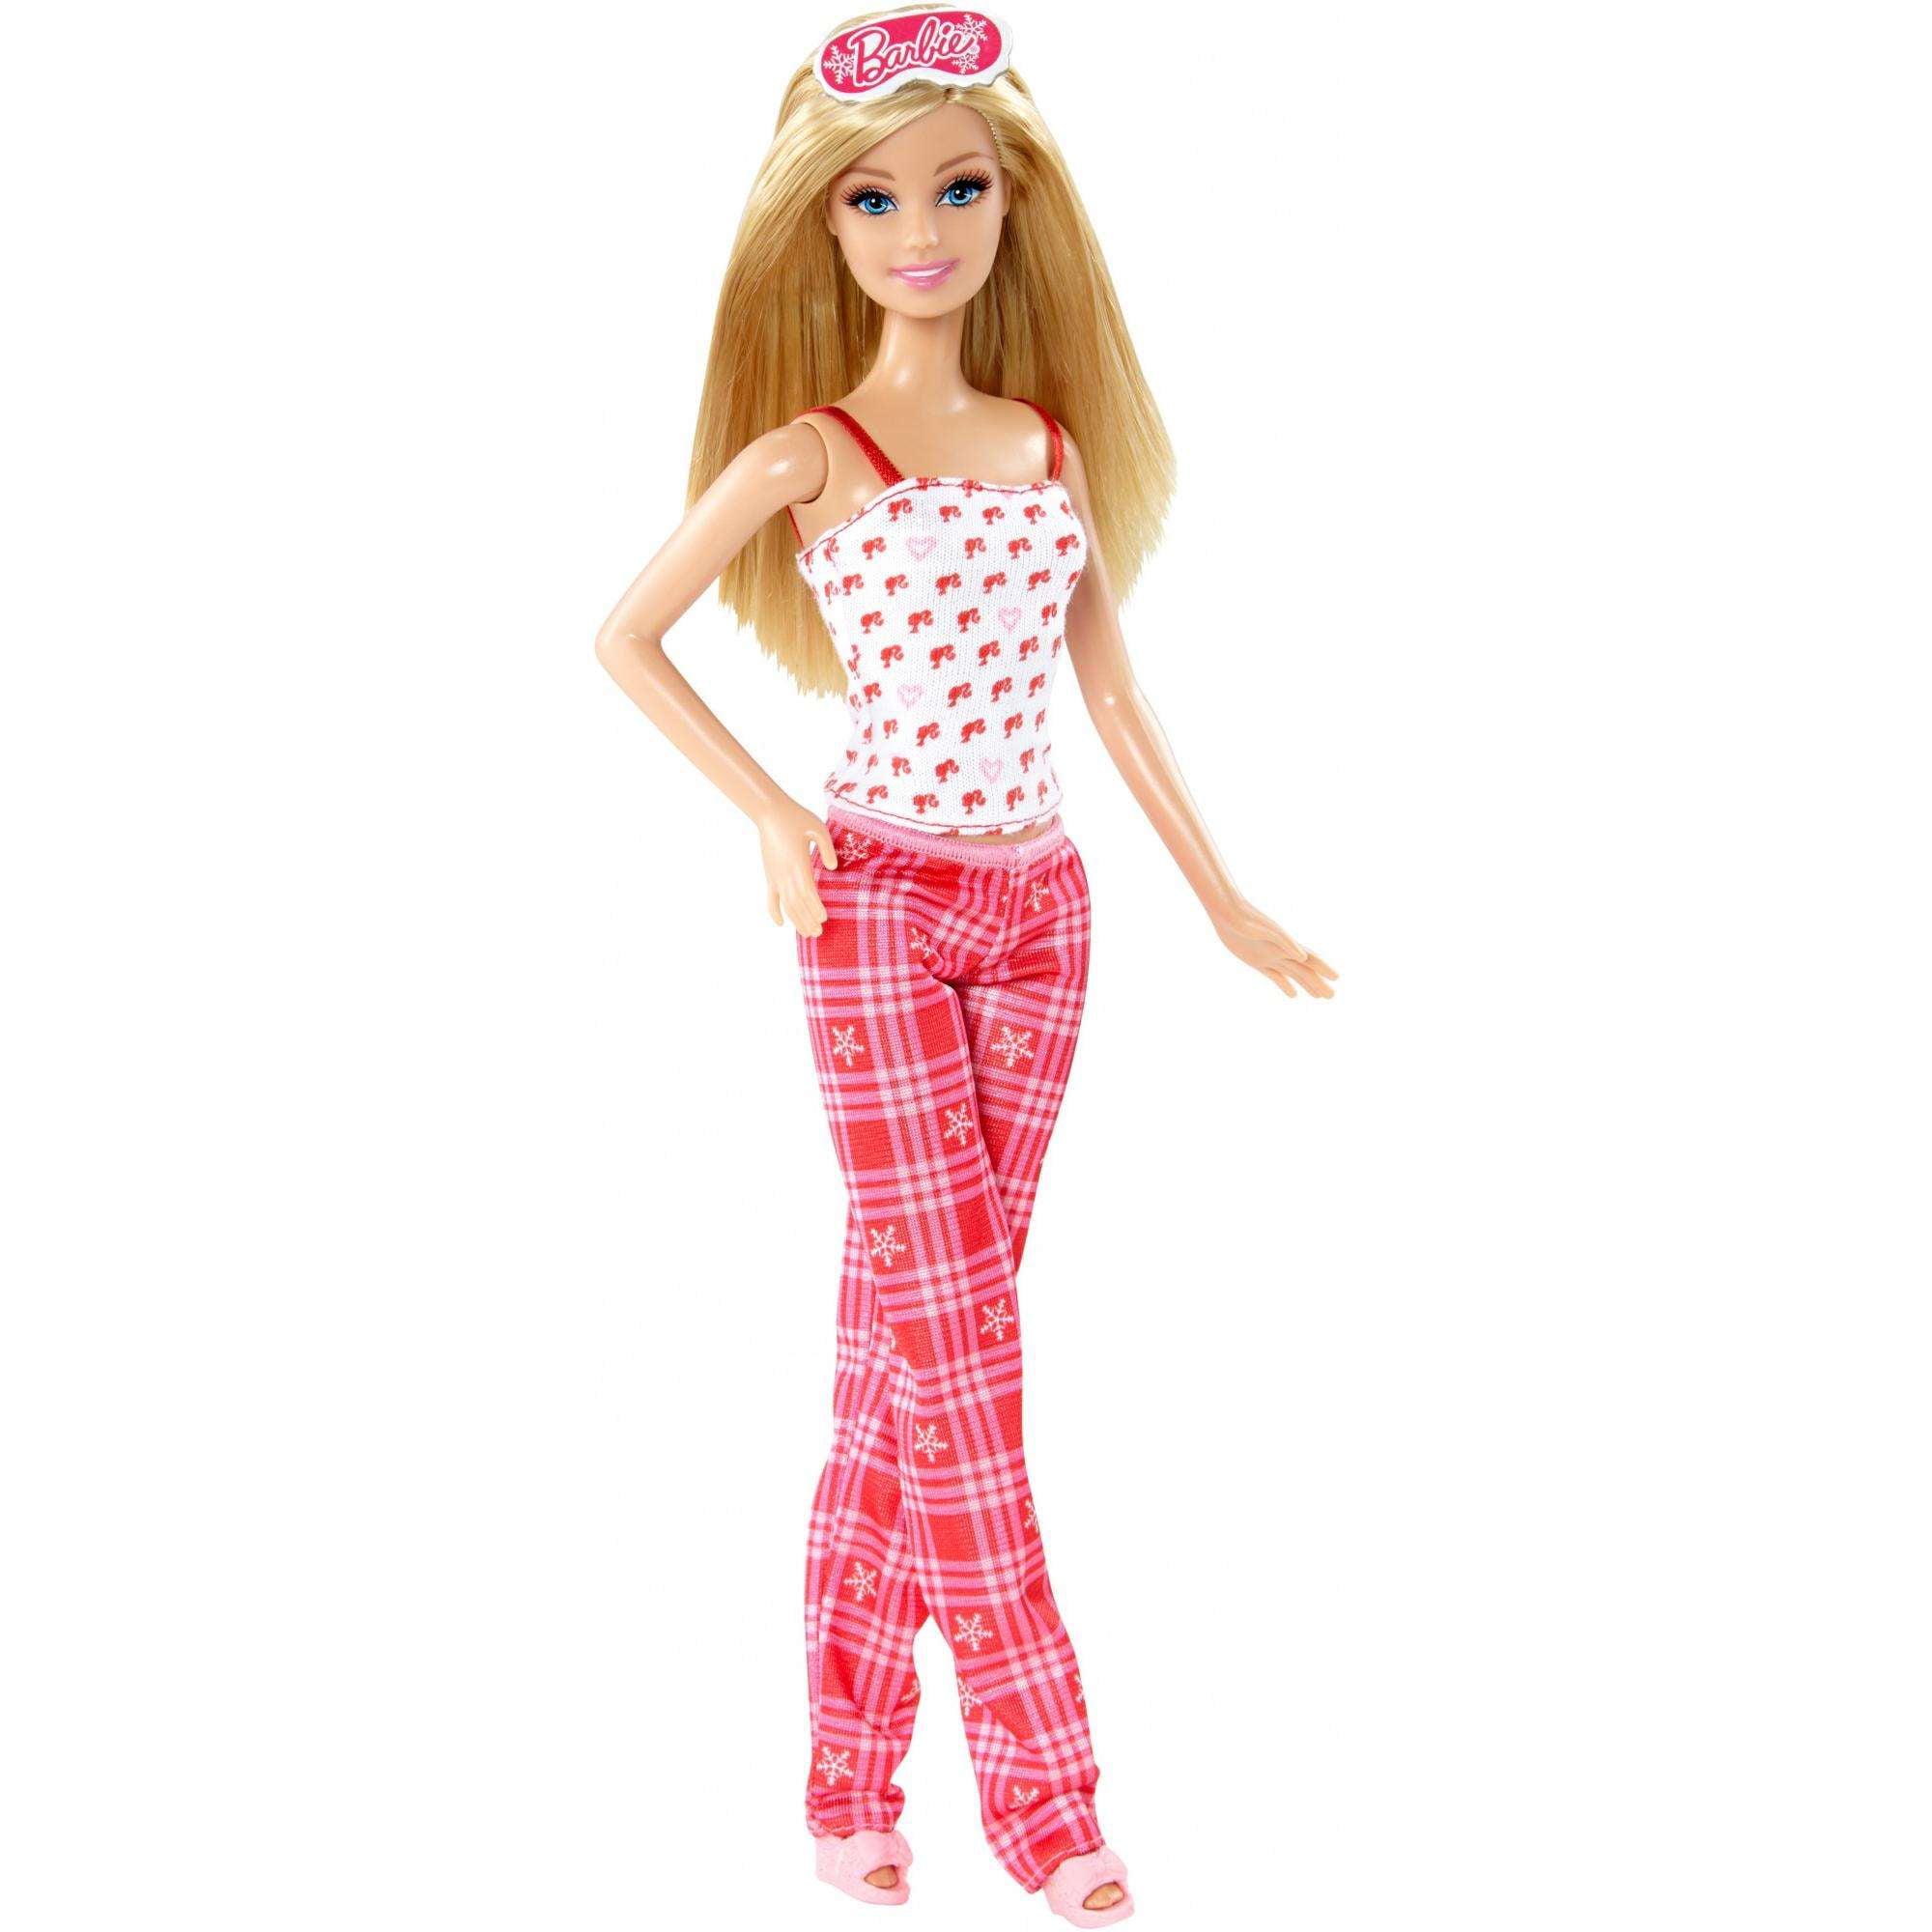 Barbie Holiday Pajamas Fun Doll